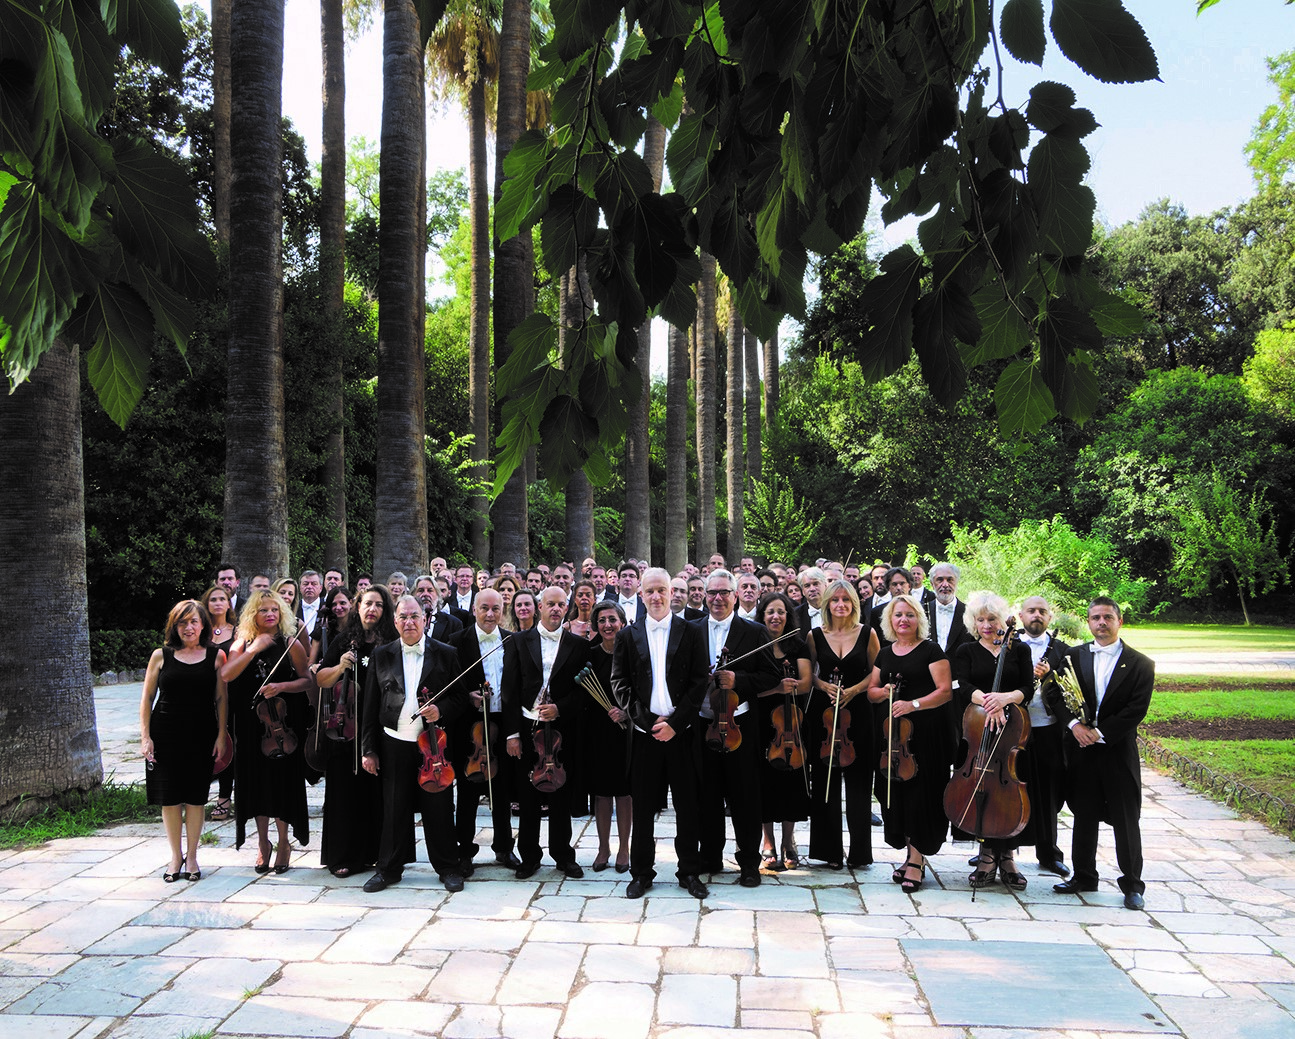 Μπετόβεν 250 χρόνια, από την Κρατική Ορχήστρα Αθηνών στο Ηρώδειο